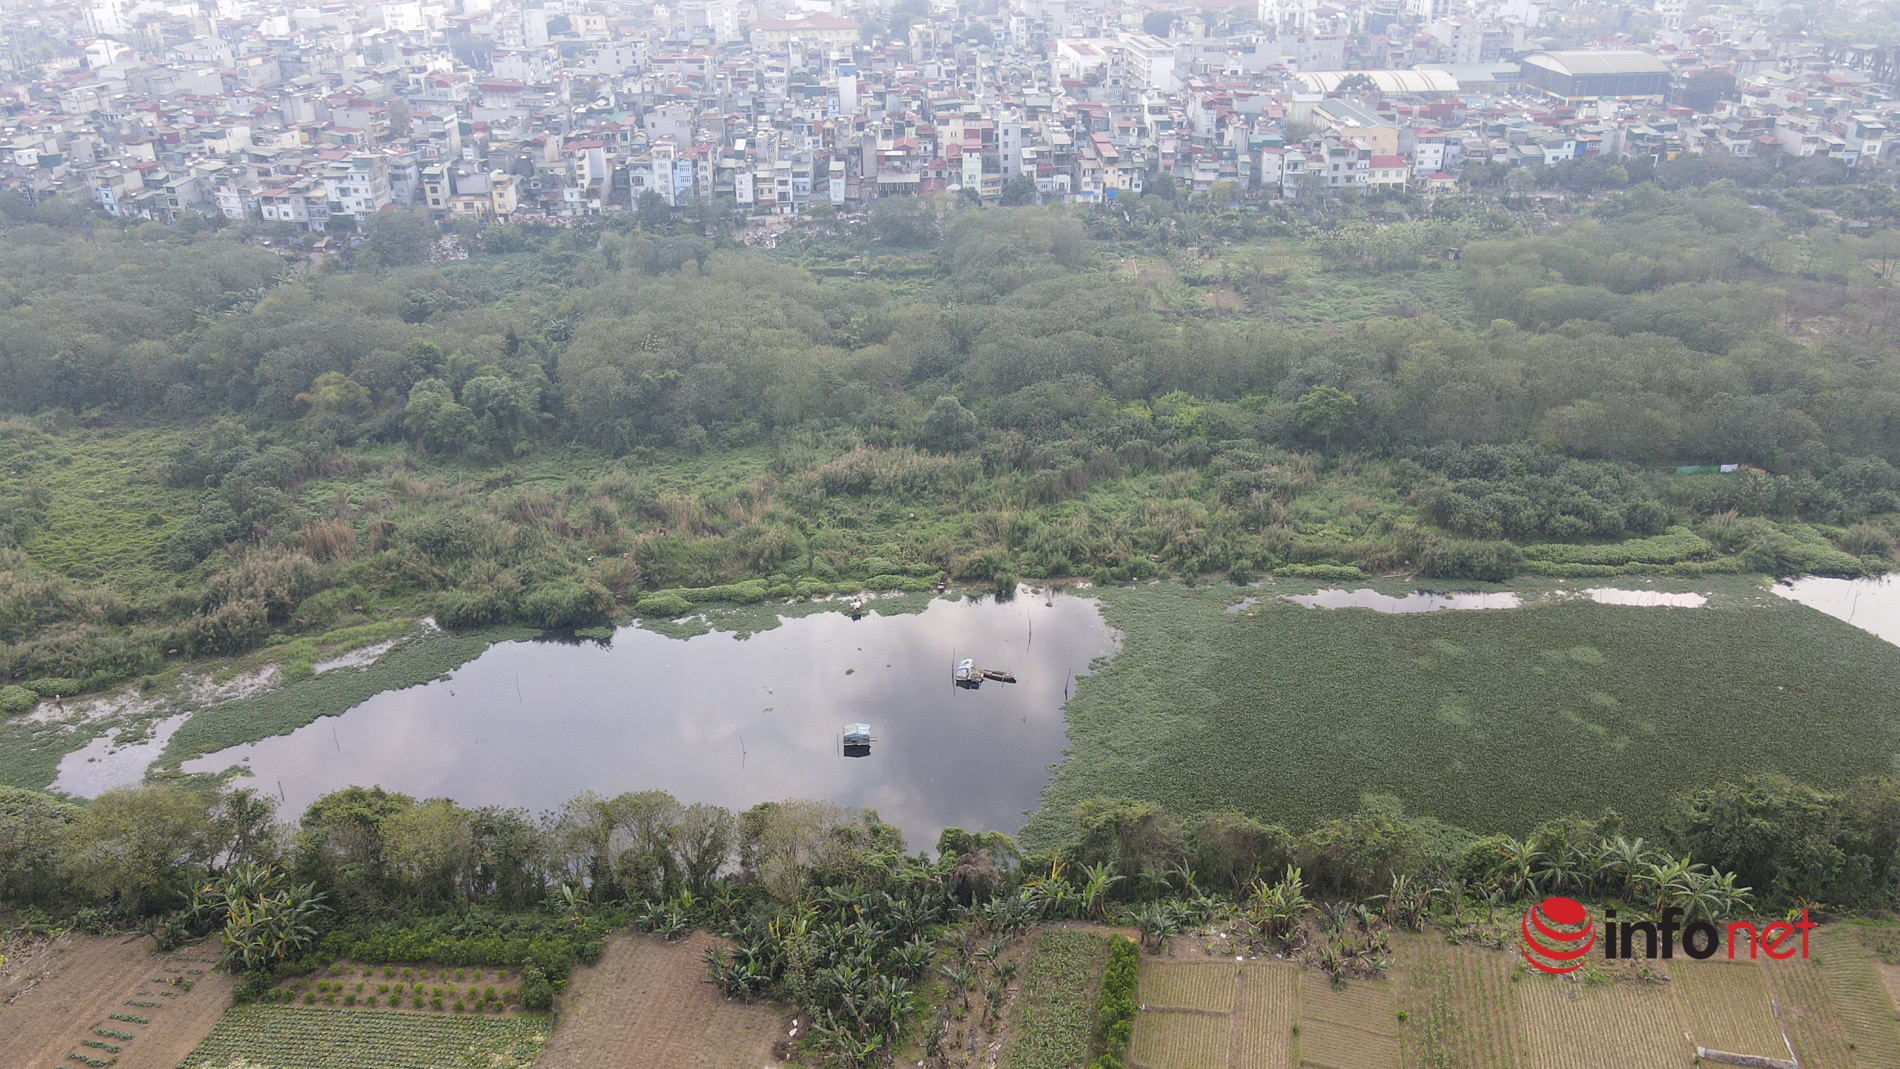 Hà Nội: Toàn cảnh bãi giữa sông Hồng nên thơ được đề xuất cải tạo thành công viên văn hóa - Ảnh 18.